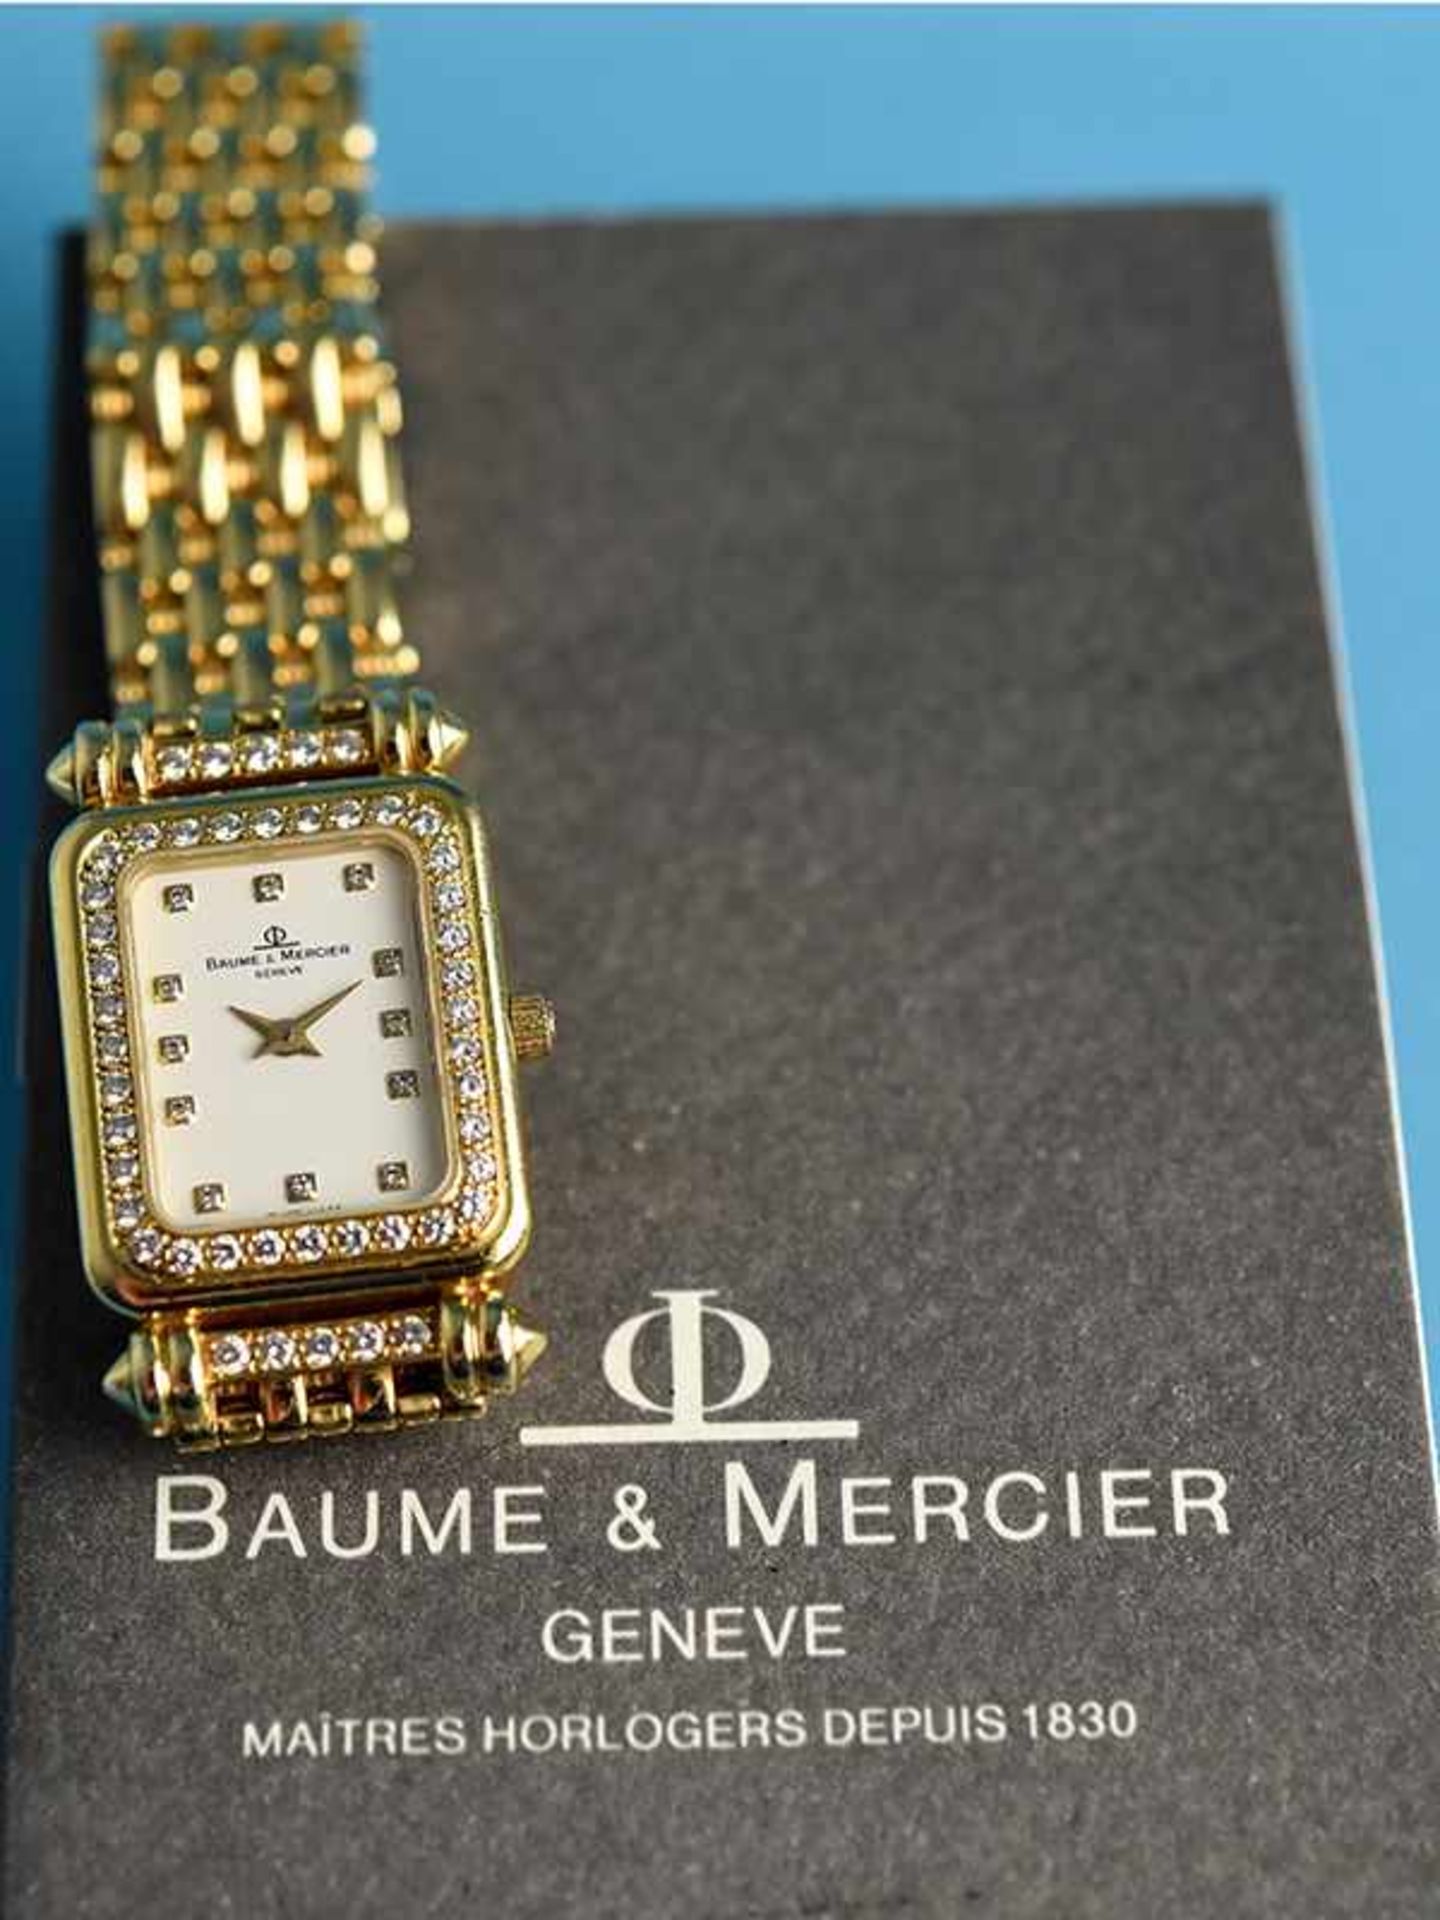 Damenarmbanduhr mit Brillanten, zusammen ca. 0,5 ct, bezeichnet Baume & Mercier, Geneve, 20. Jh. - Bild 2 aus 8